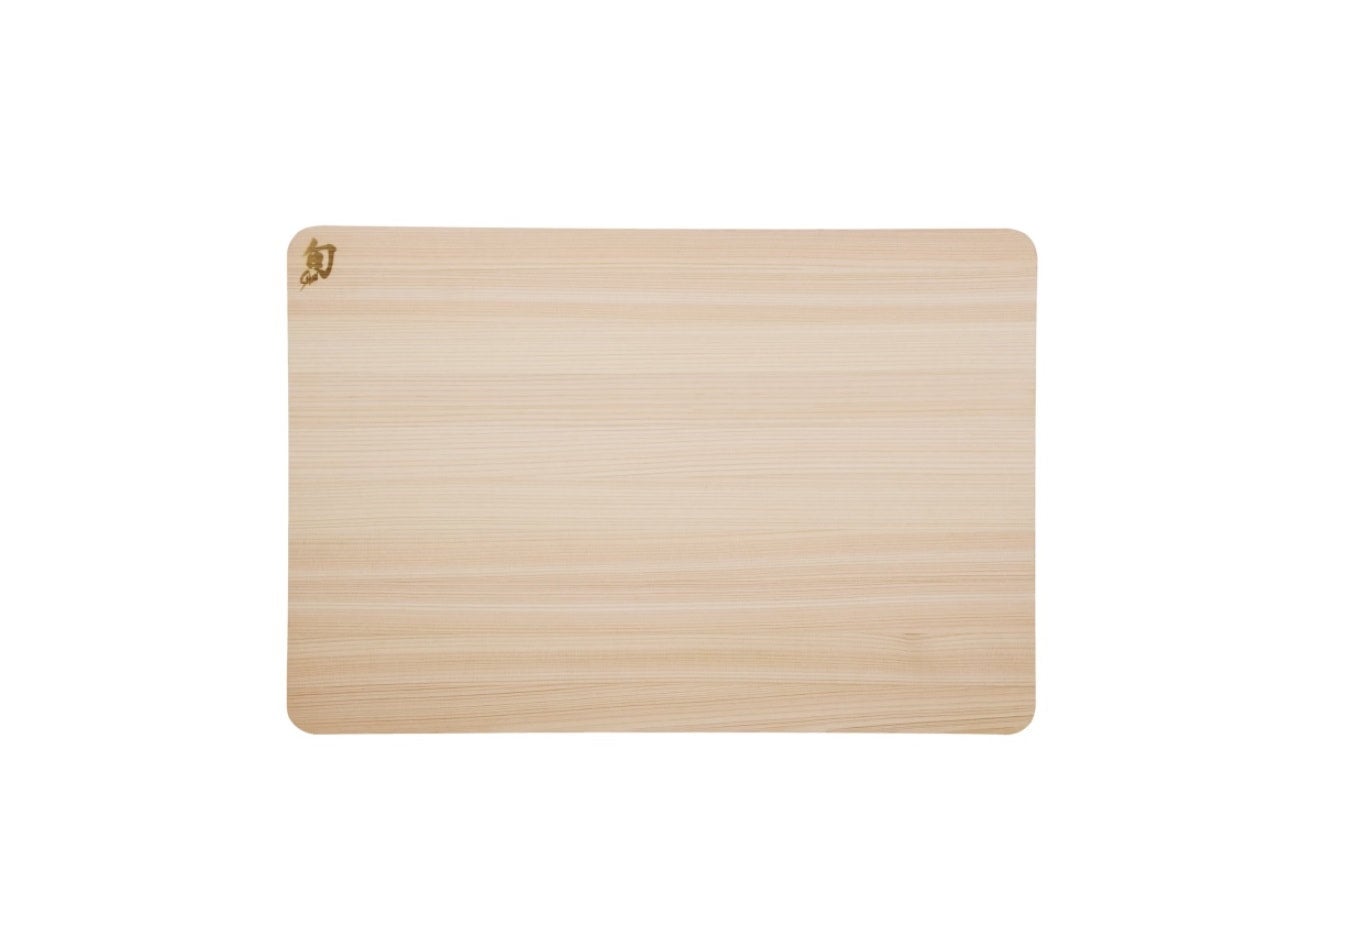 Shun Large Hinoki Cutting Board